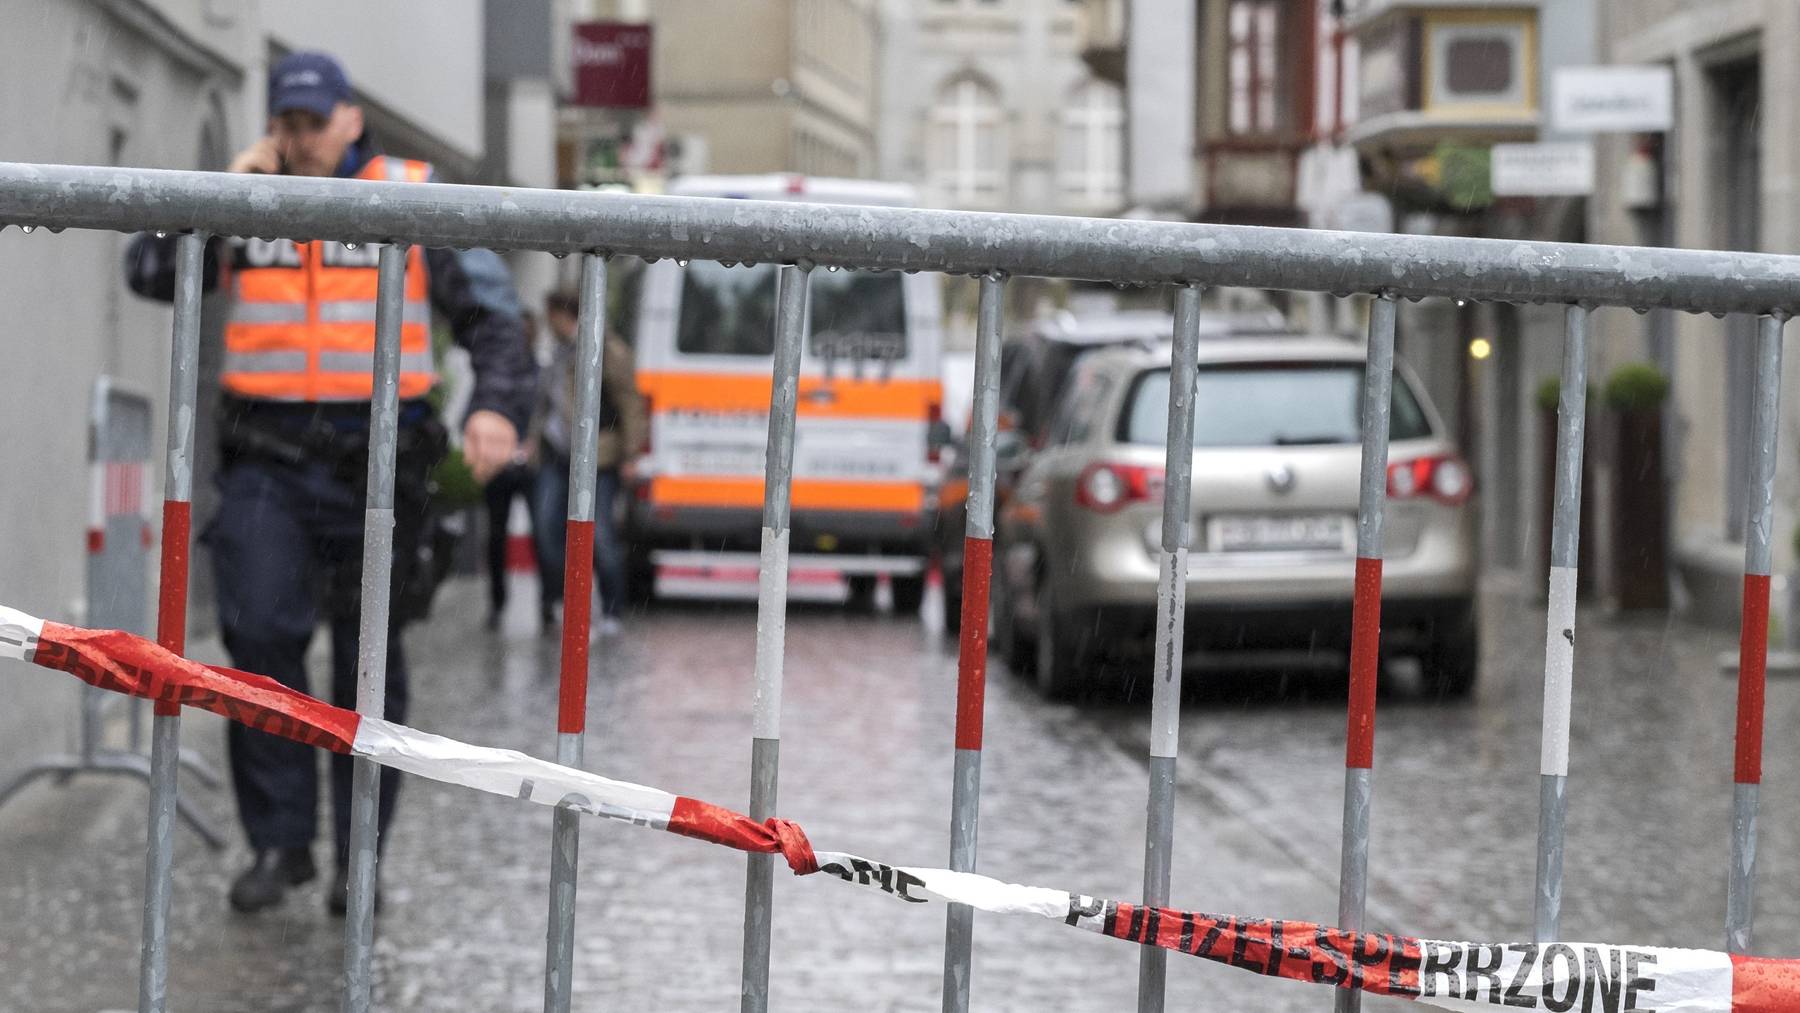 Tötungsdelikt vor dem Hotel Dom in St. Gallen. Ein 42 jähriger Kosovar wurde in den frühen Morgenstunden auf offener Strasse erschossen.